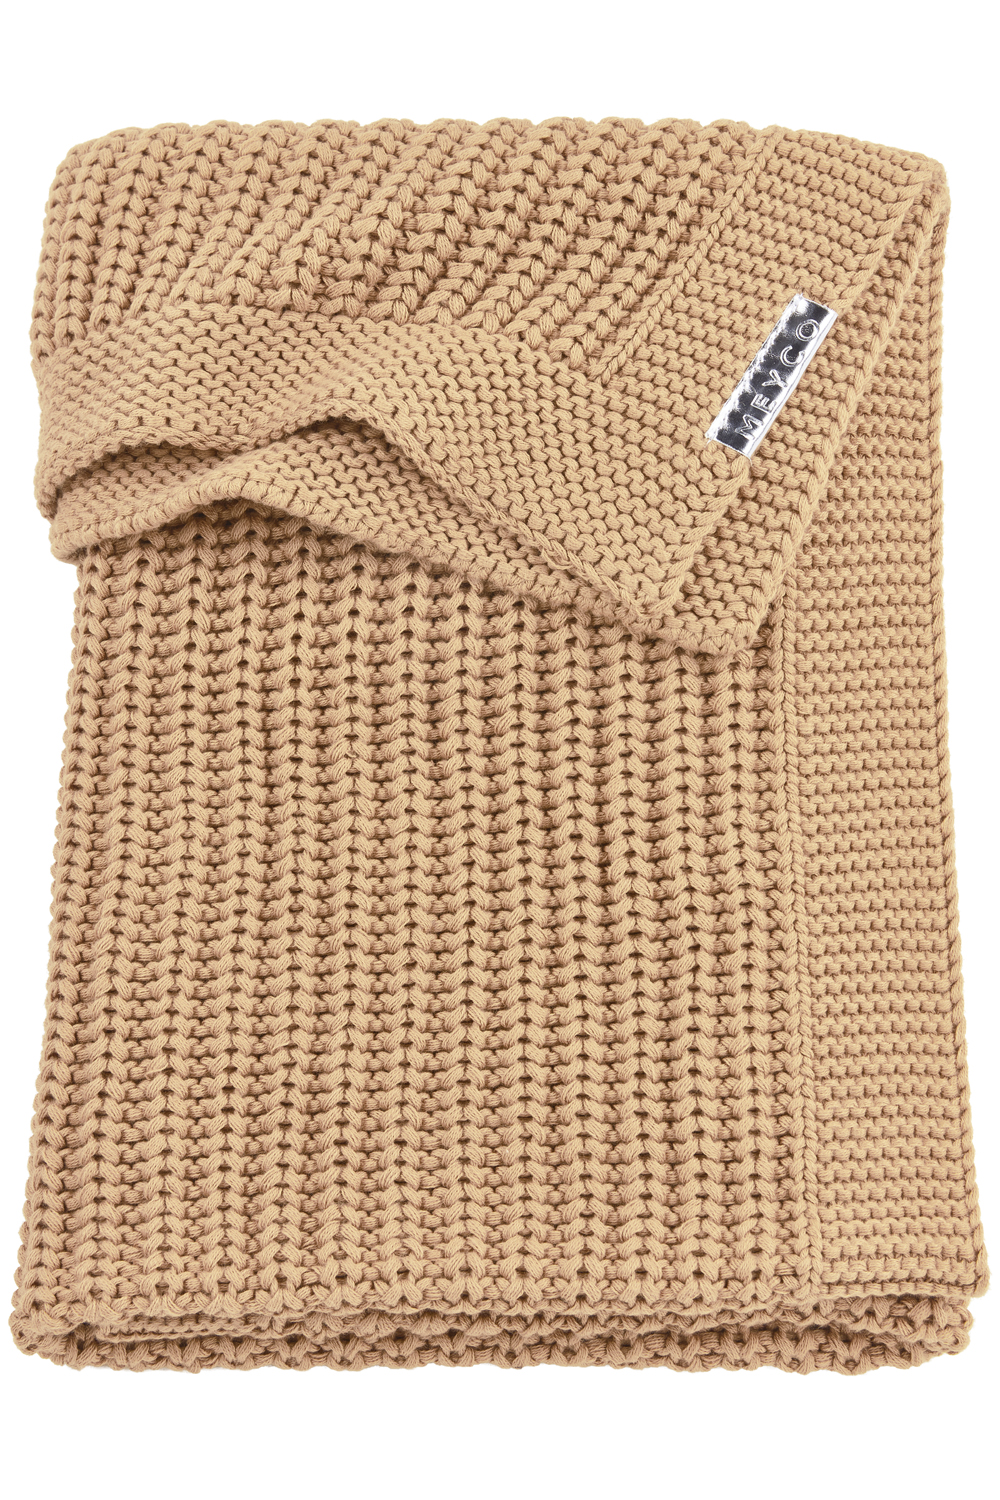 Cot Bed Blanket Herringbone - Warm Sand - 100X150cm